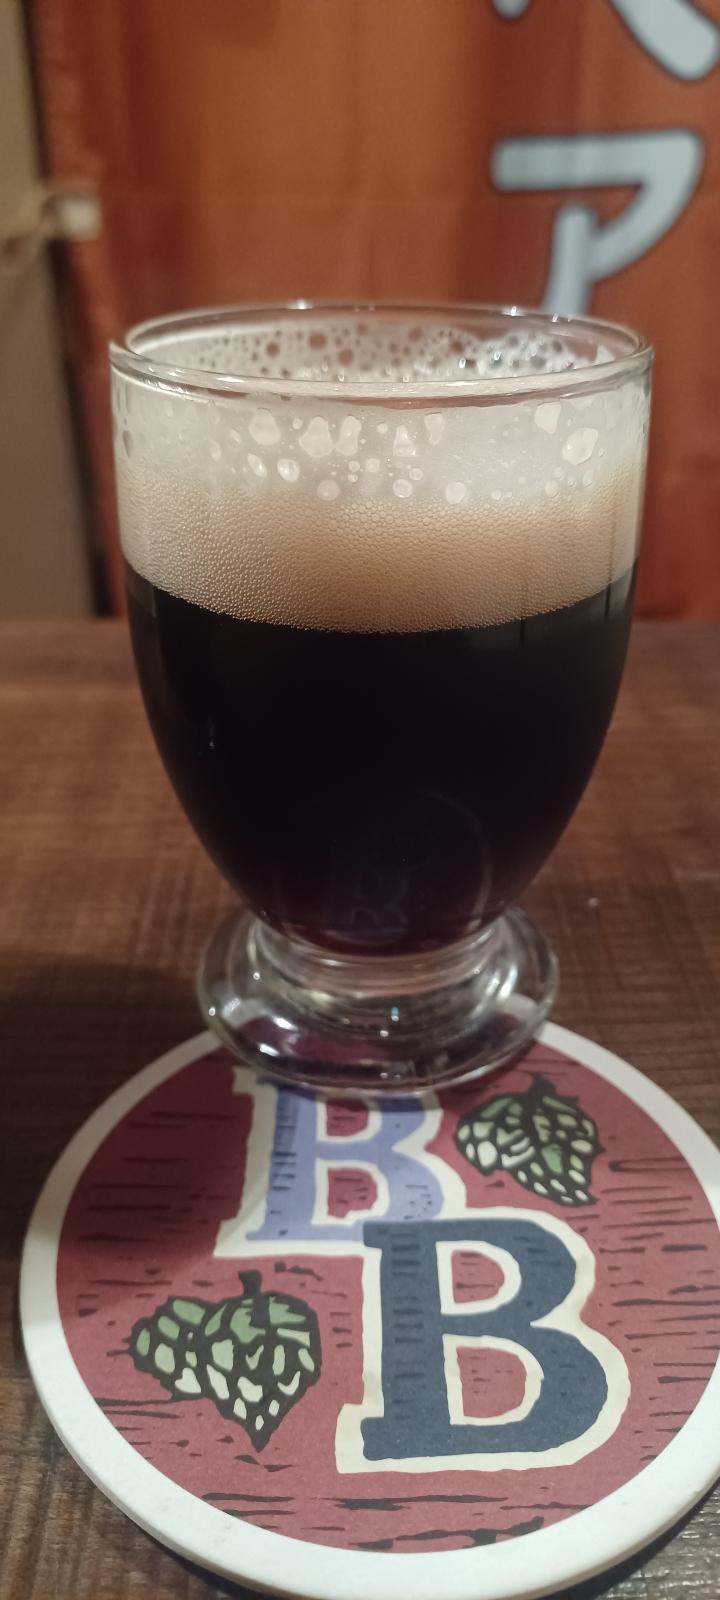 Rainy Season Black Ale